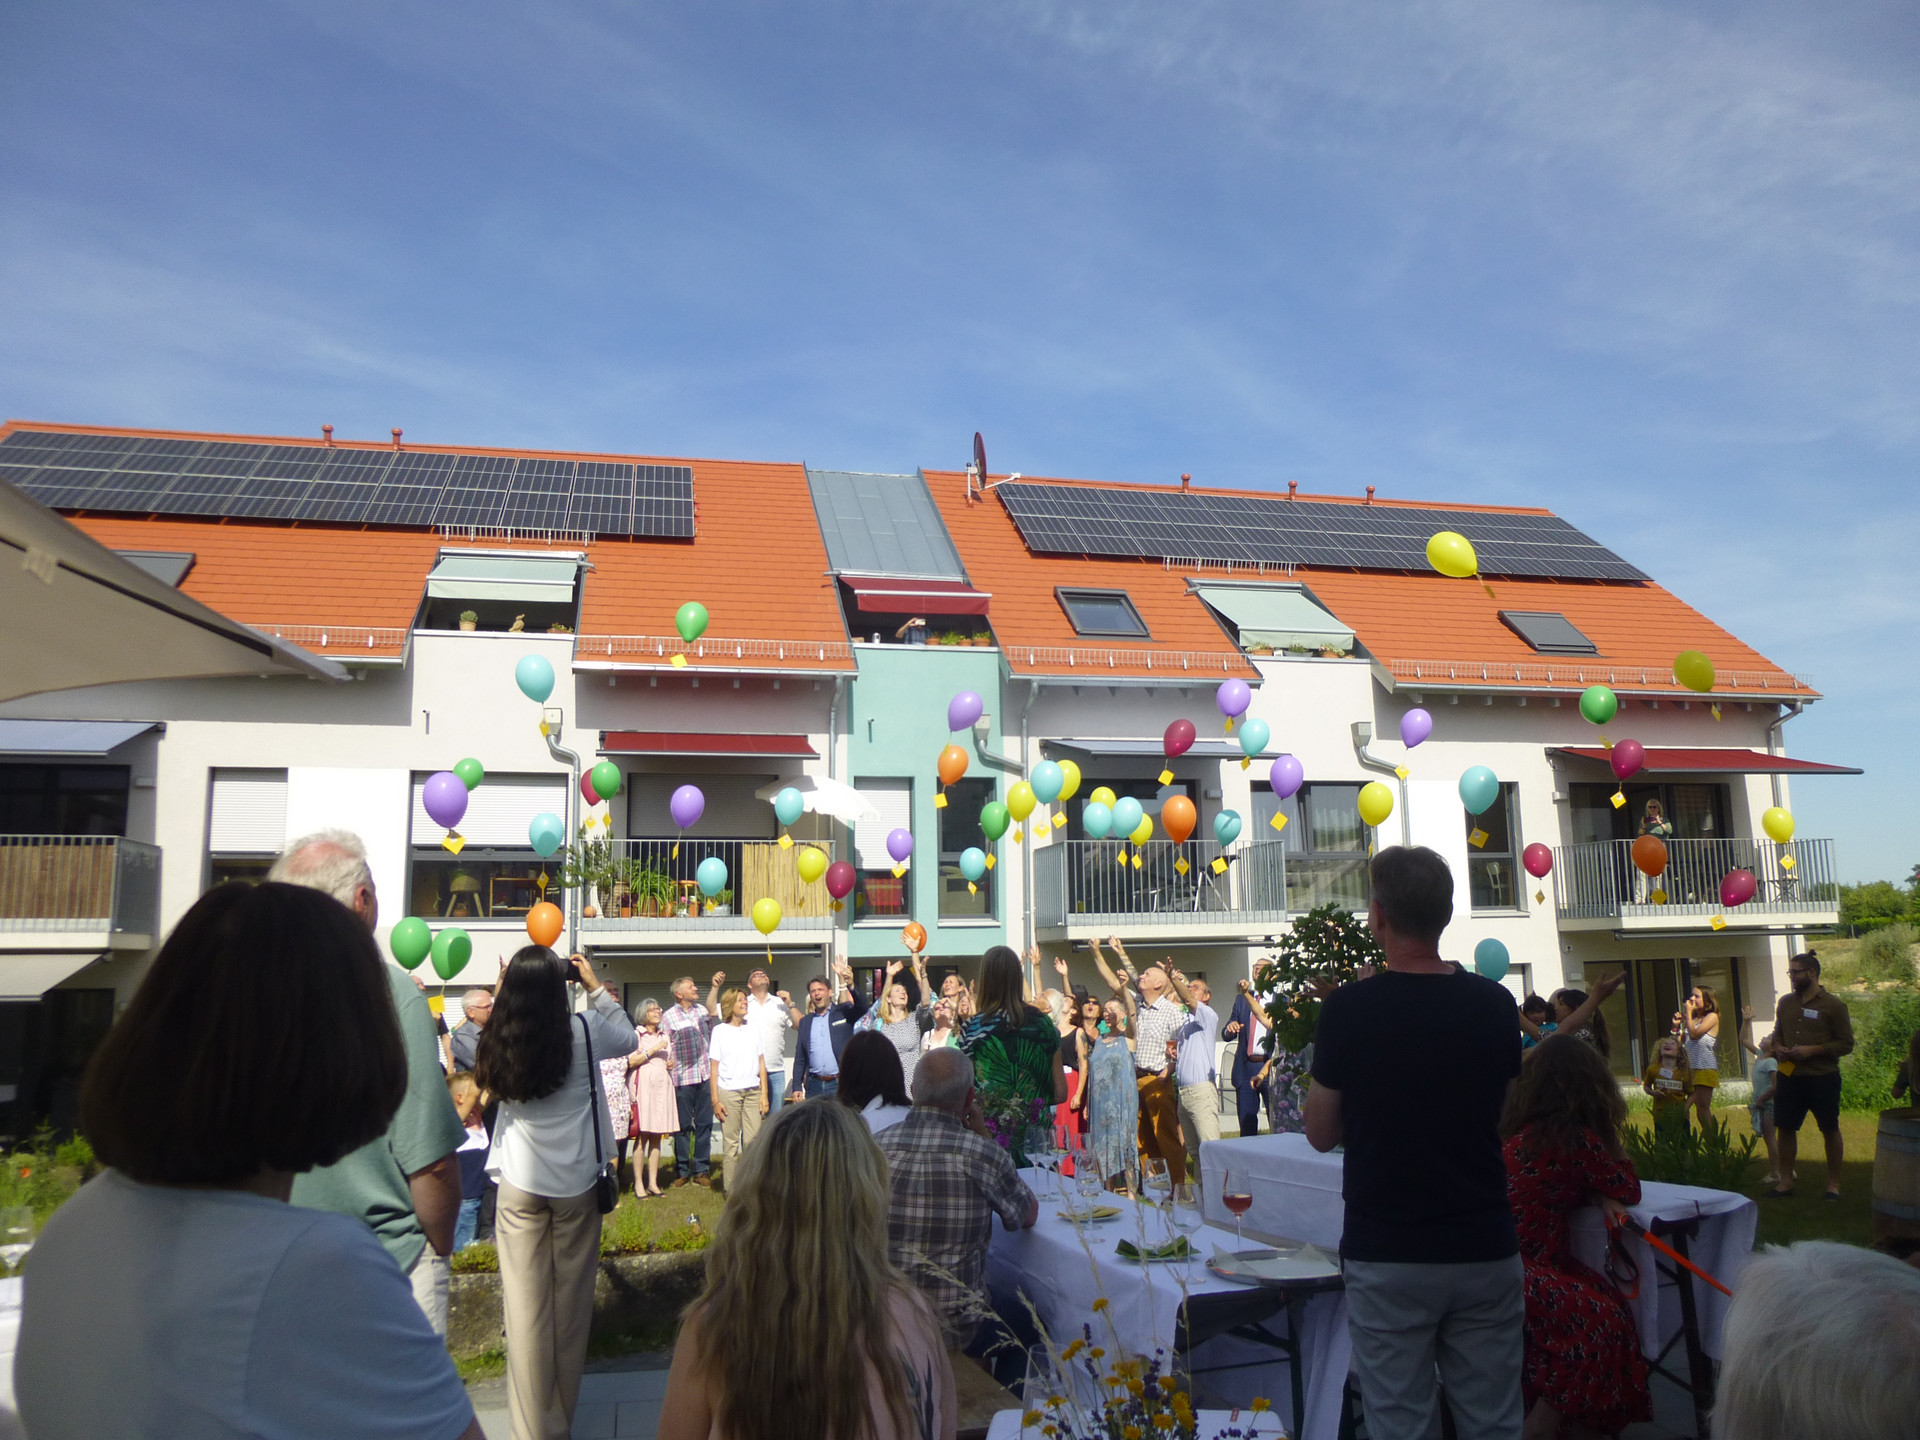 Wohngebäude mit Menschen im Vordergrund, die Luftballons steigen lassen